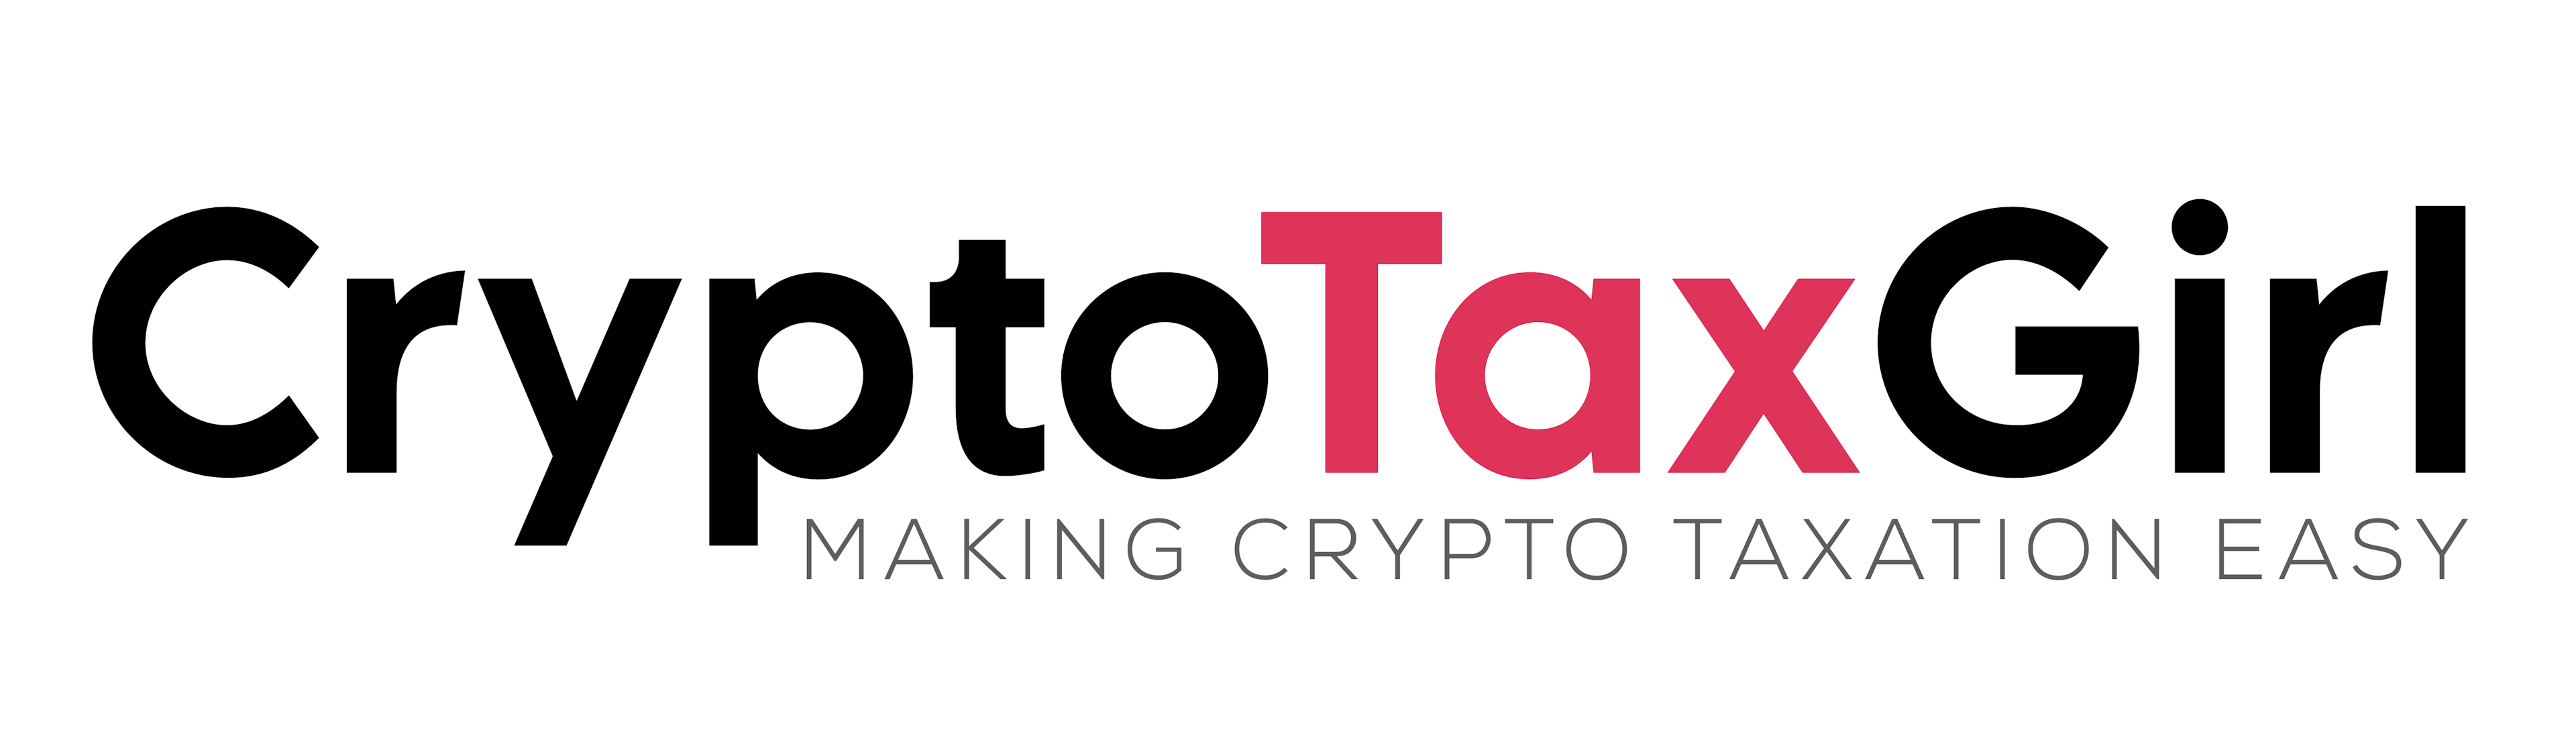 Crypto Tax Girl logo